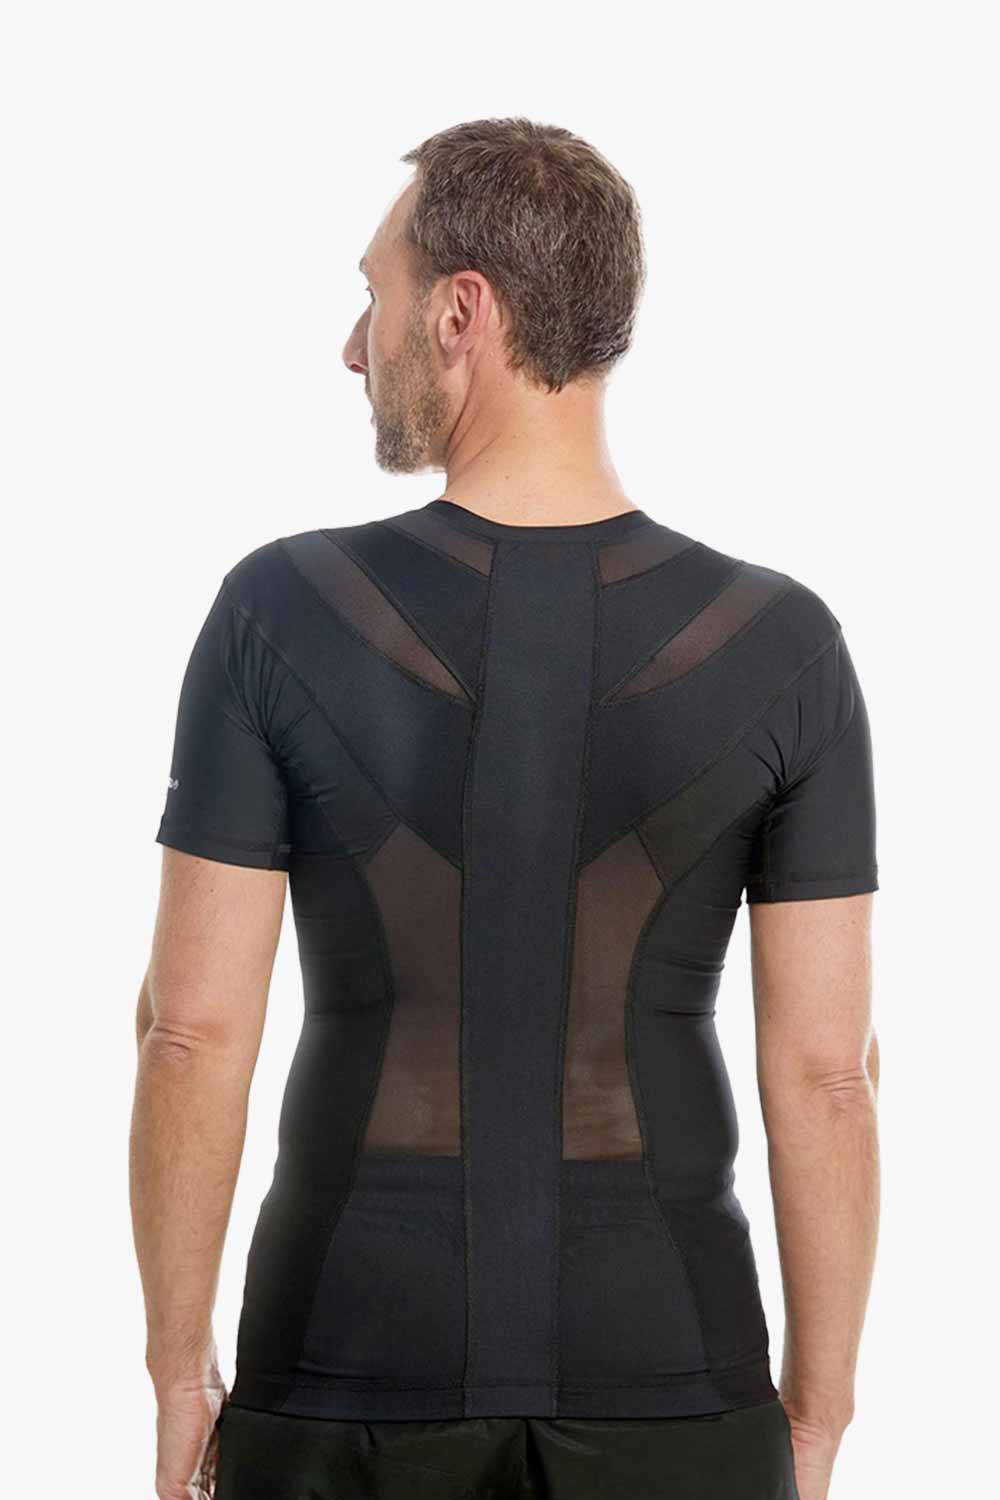 Men's Posture Shirt™ Zipper - Sort